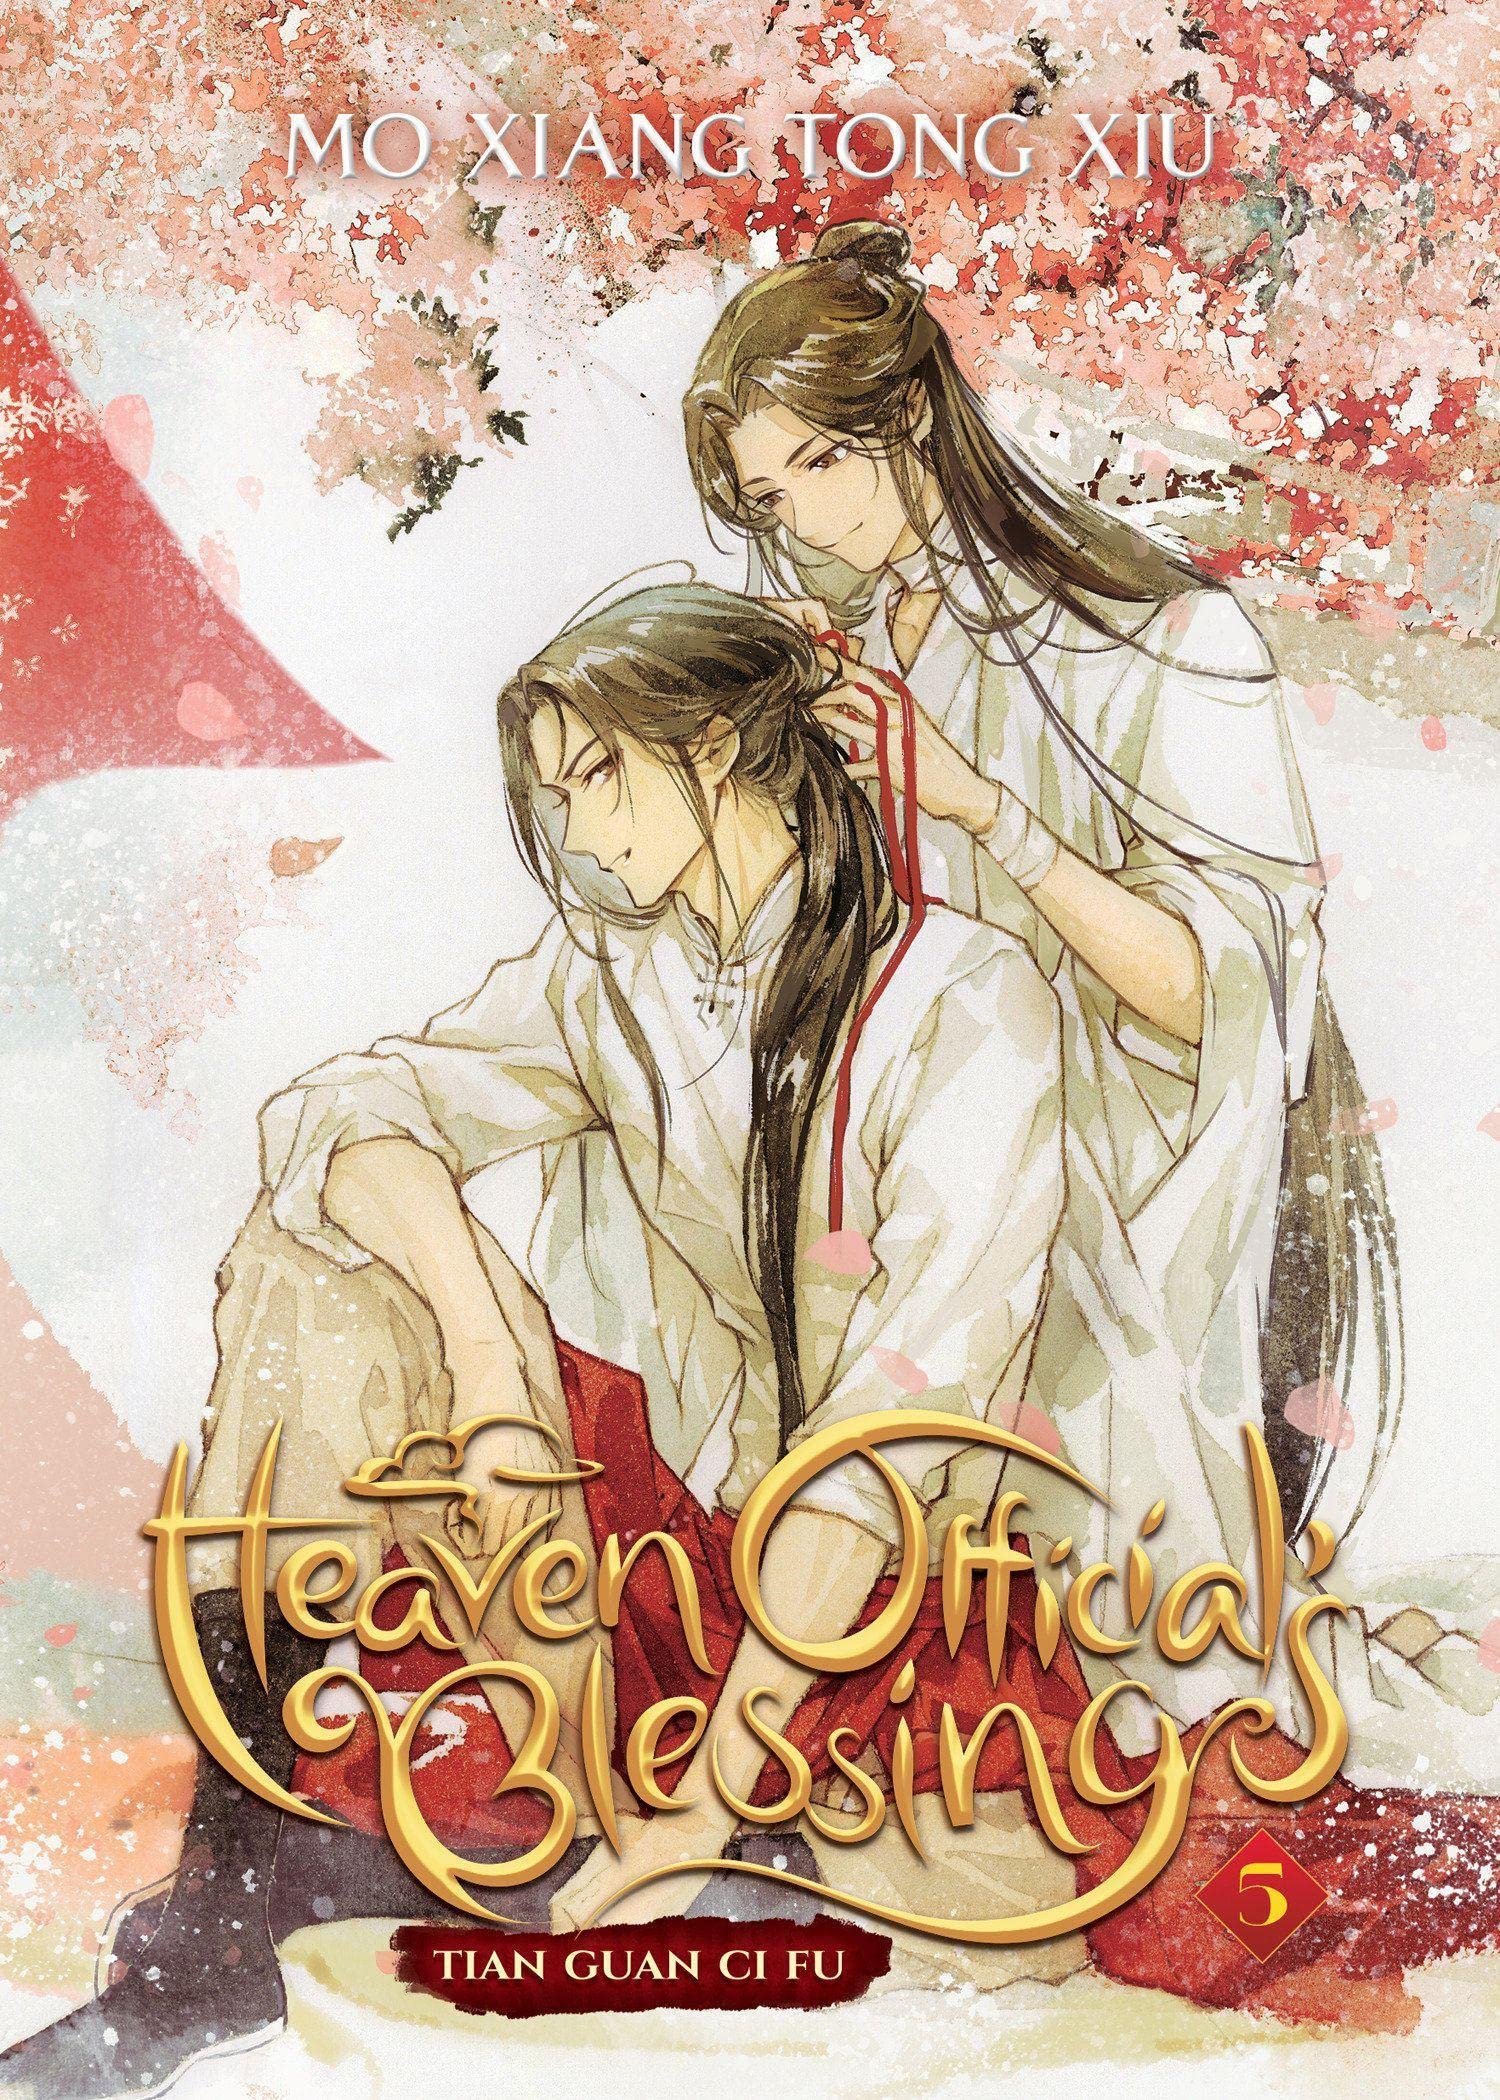 Heaven Official’s Blessing: Tian Guan Ci Fu (Novel) - Volume 5 | Mo Xiang Tong Xiu